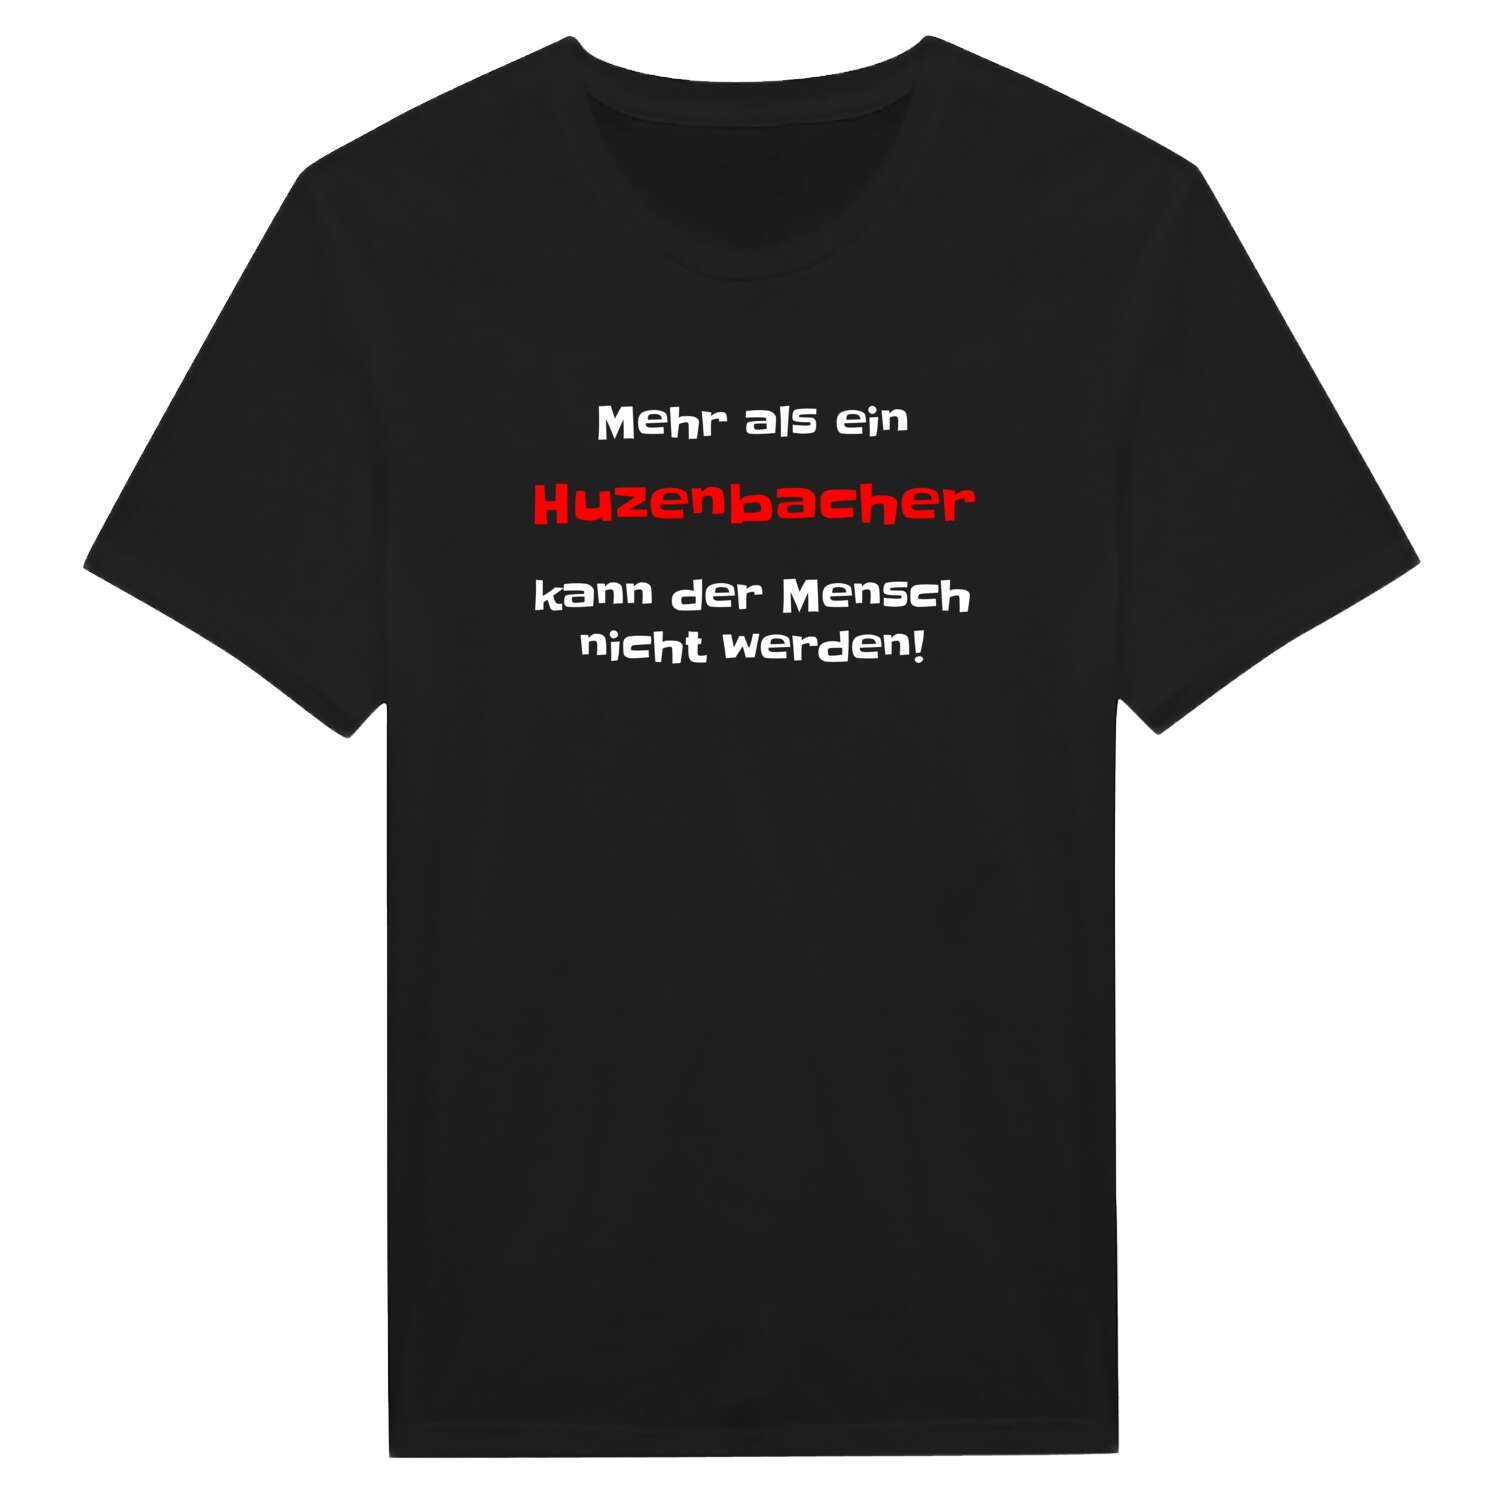 Huzenbach T-Shirt »Mehr als ein«